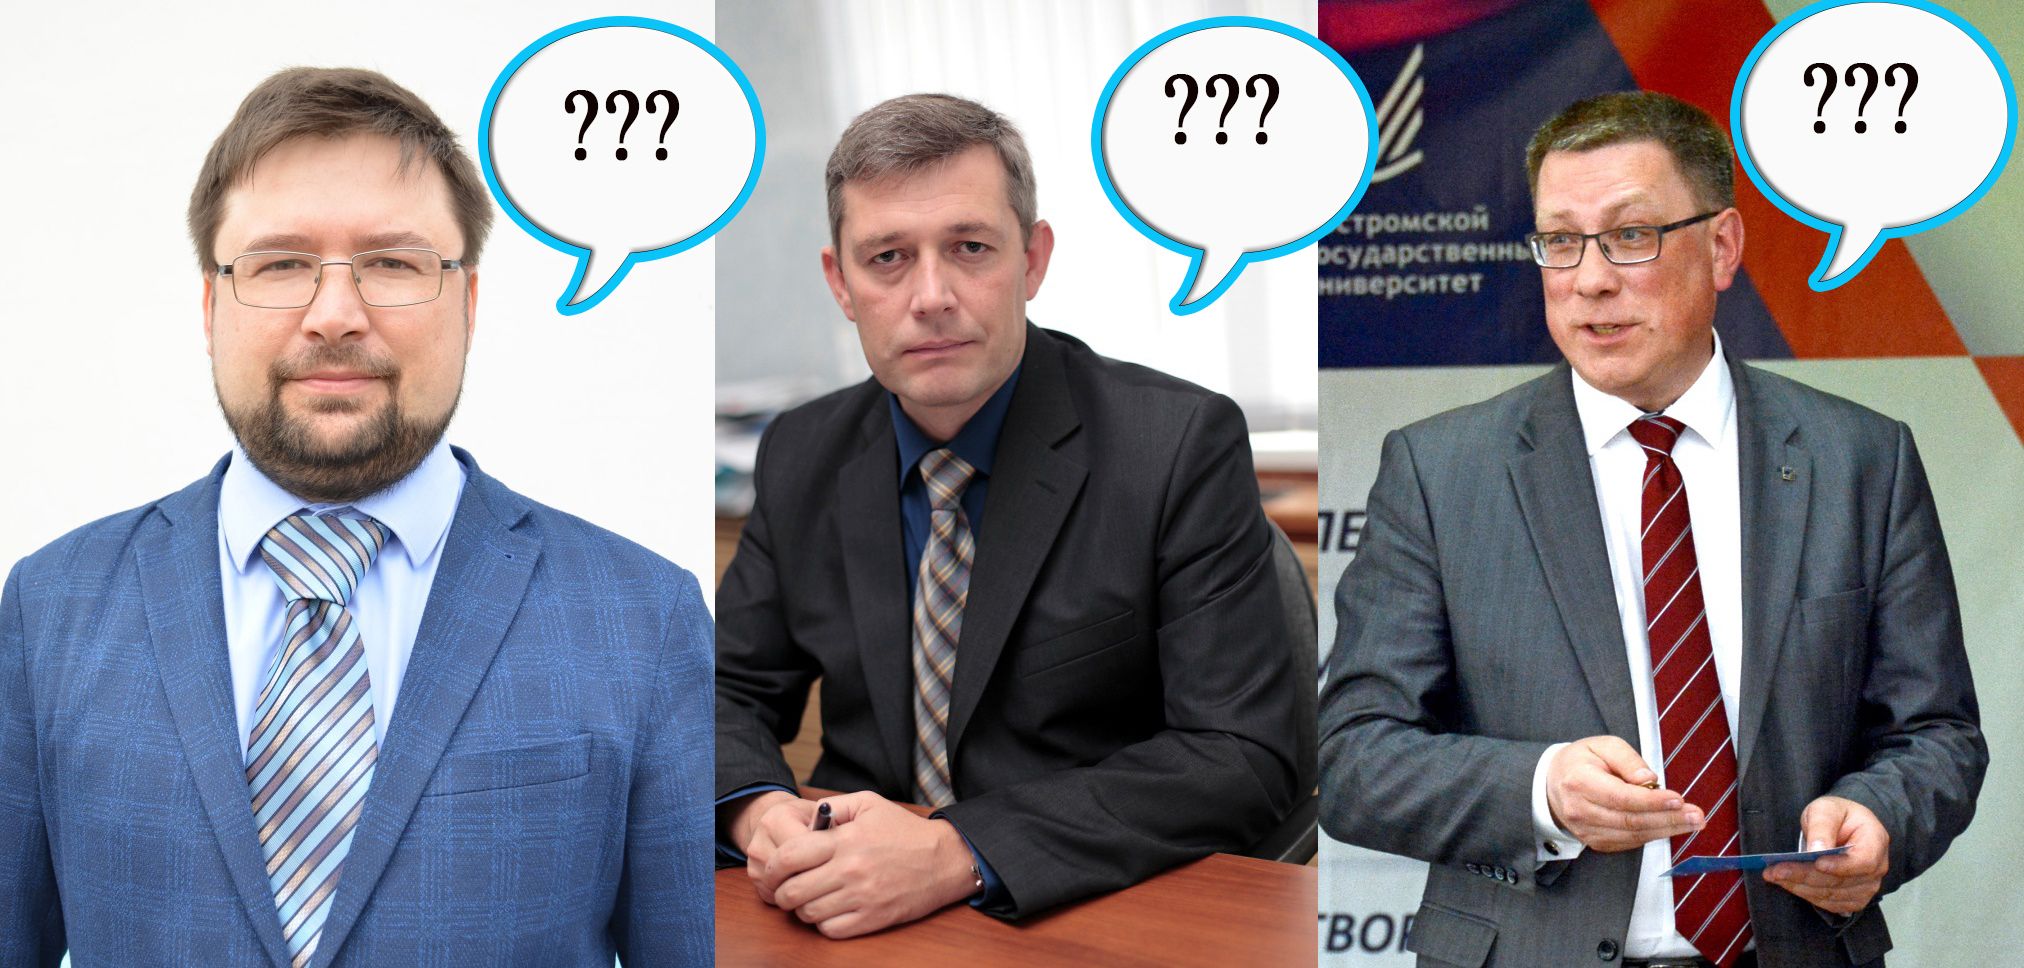 «Грязь» и «упадок вуза»: на выборах ректора КГУ произошел невиданный скандал